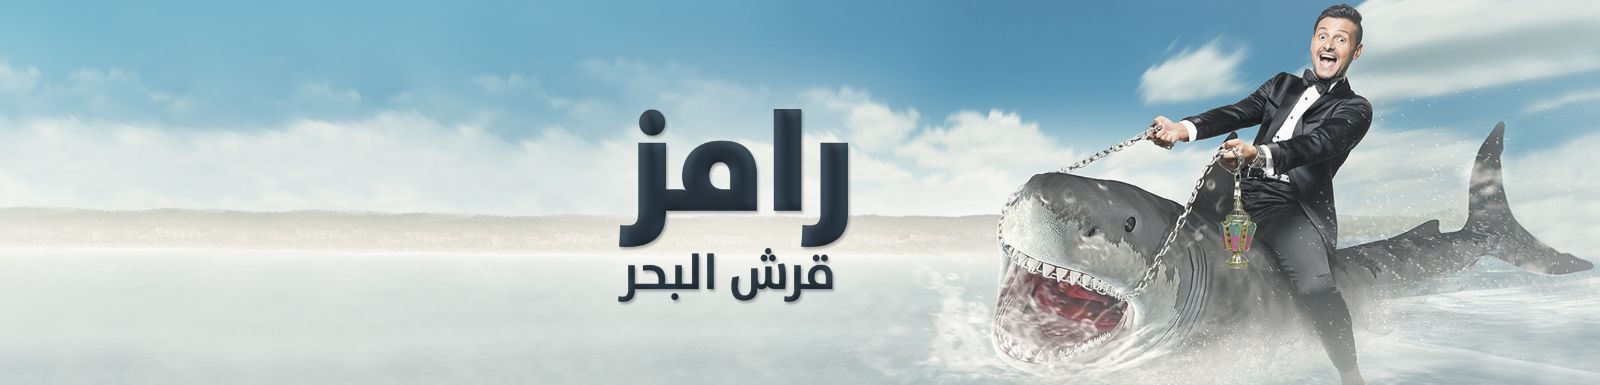 المقطع المحذوف من حلقة عبدالله مشرف في برنامج رامز قرش البحر 2014